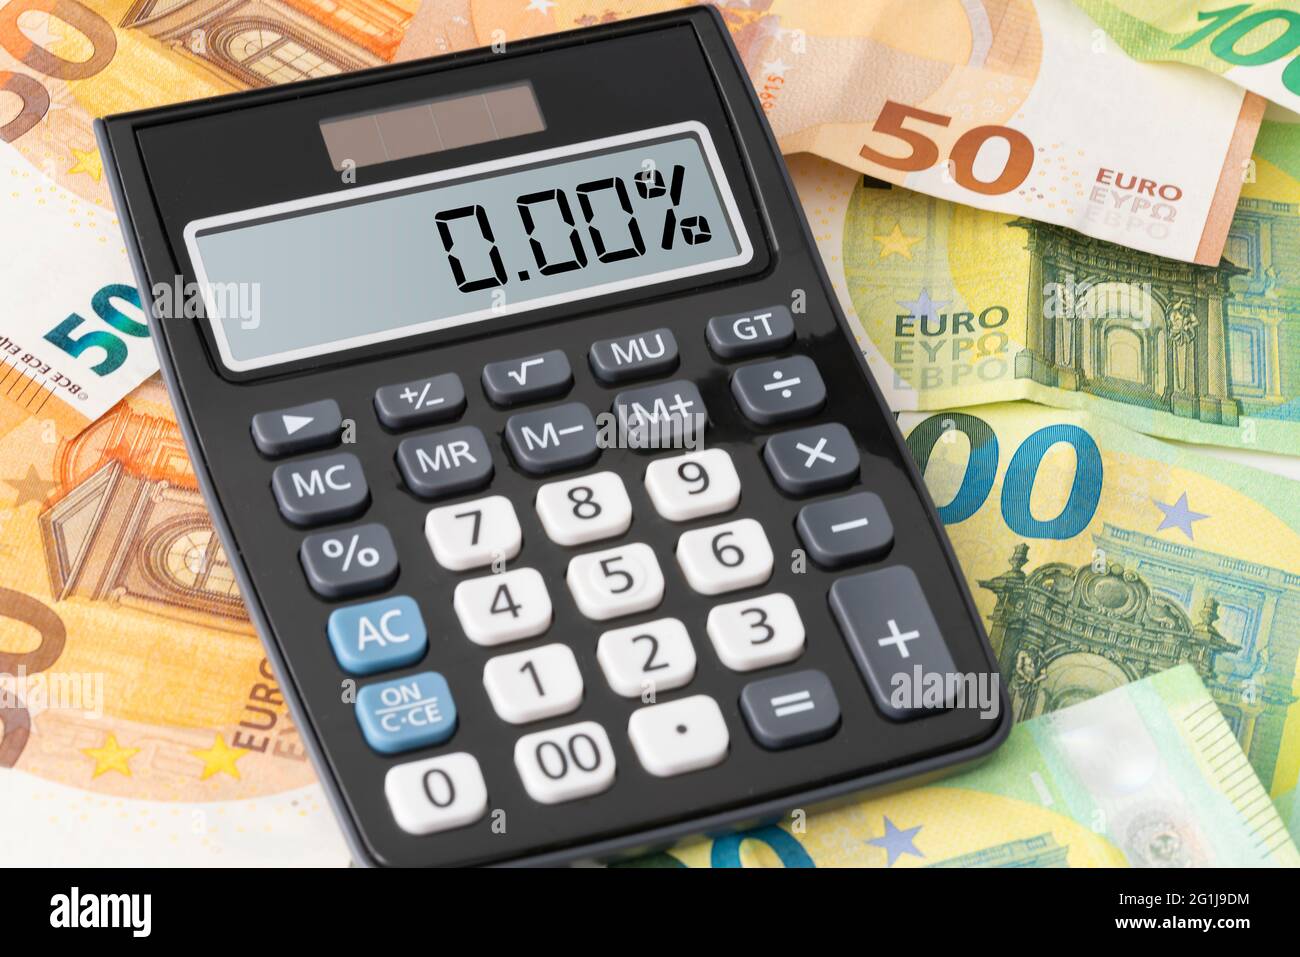 Calculadora que muestra el tipo de interés cero por ciento en los billetes en euros, concepto de préstamo barato Foto de stock